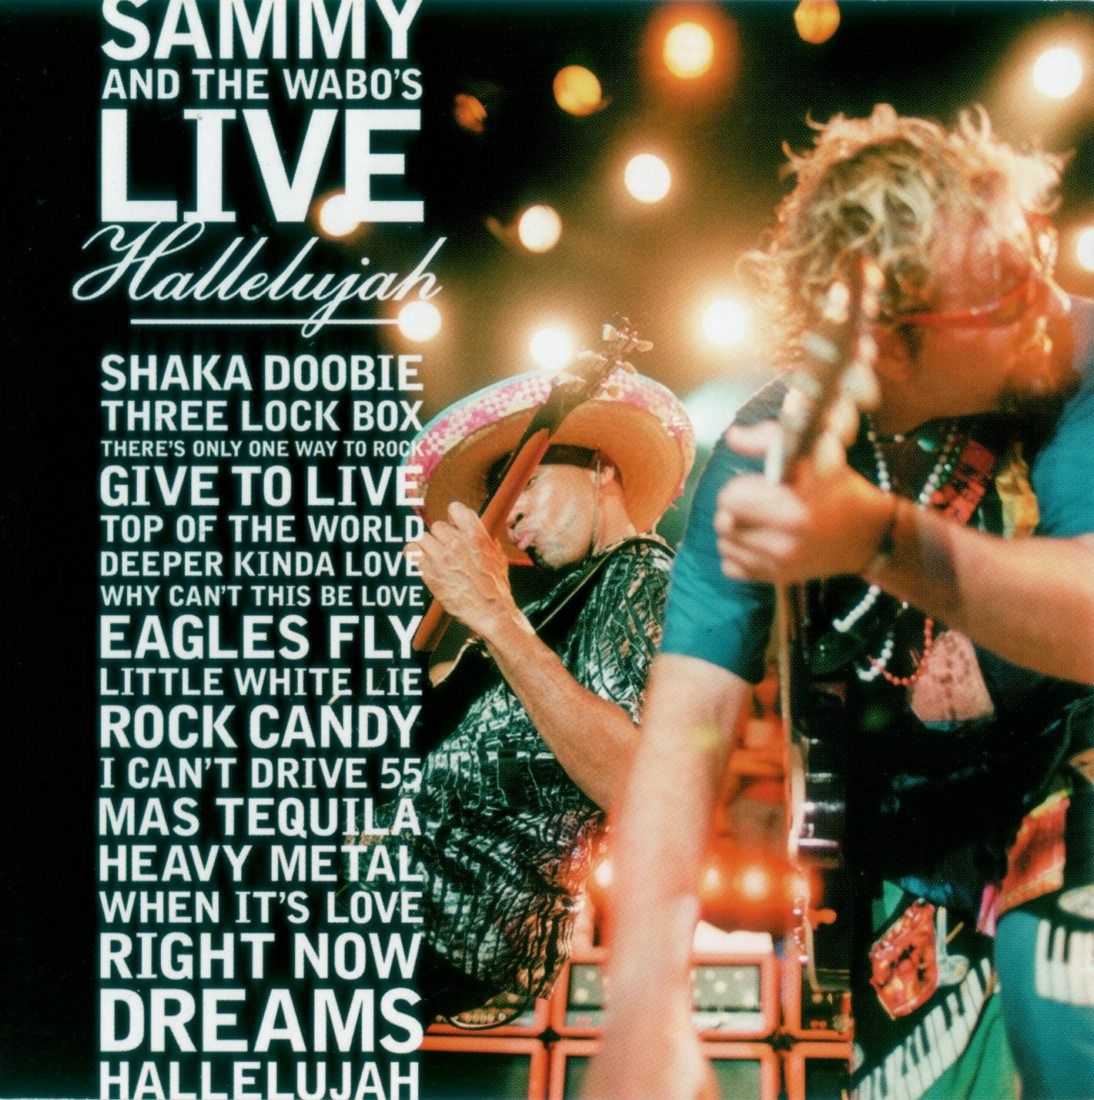 Sammy Hagar - Give To Live